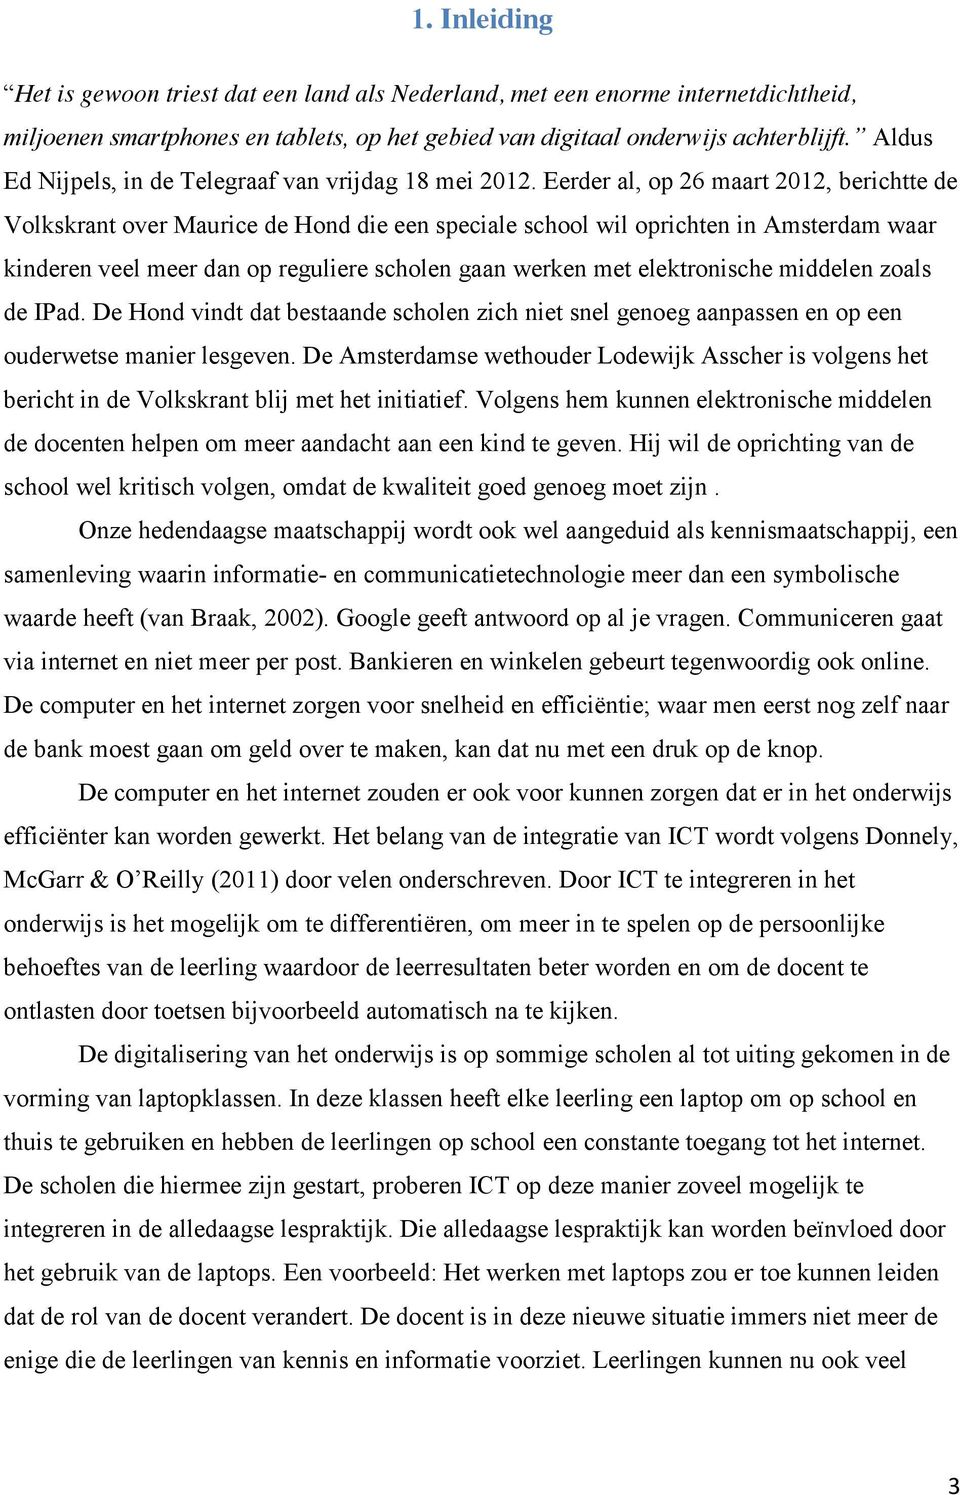 Eerder al, op 26 maart 2012, berichtte de Volkskrant over Maurice de Hond die een speciale school wil oprichten in Amsterdam waar kinderen veel meer dan op reguliere scholen gaan werken met